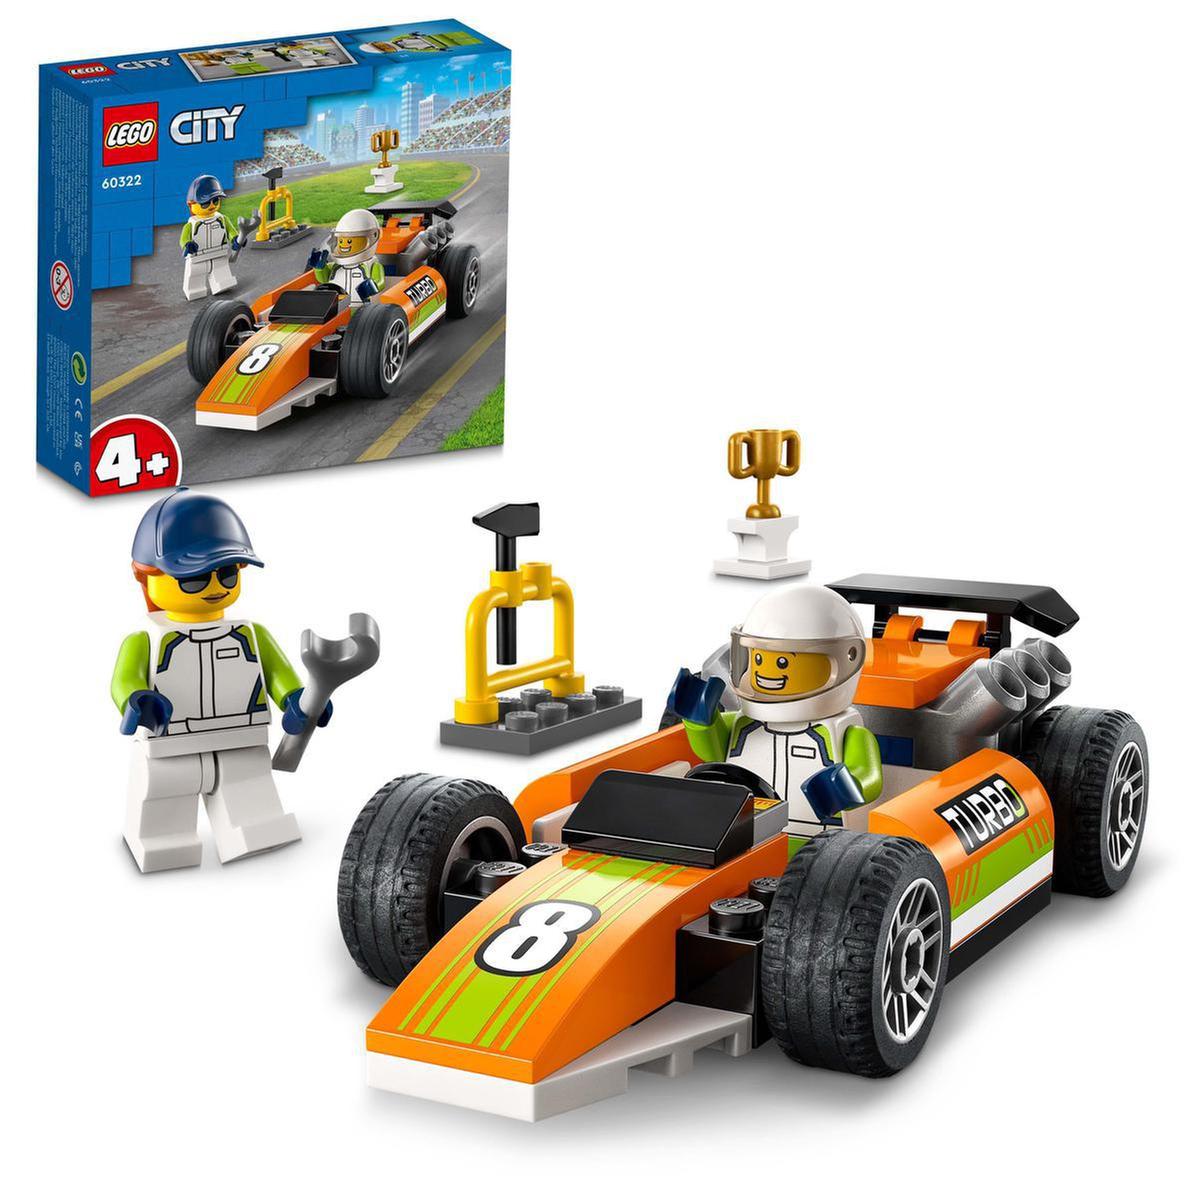 LEGO City - Carro de carreiras - 60322 | LEGO CITY | Loja de brinquedos e  videojogos Online Toysrus